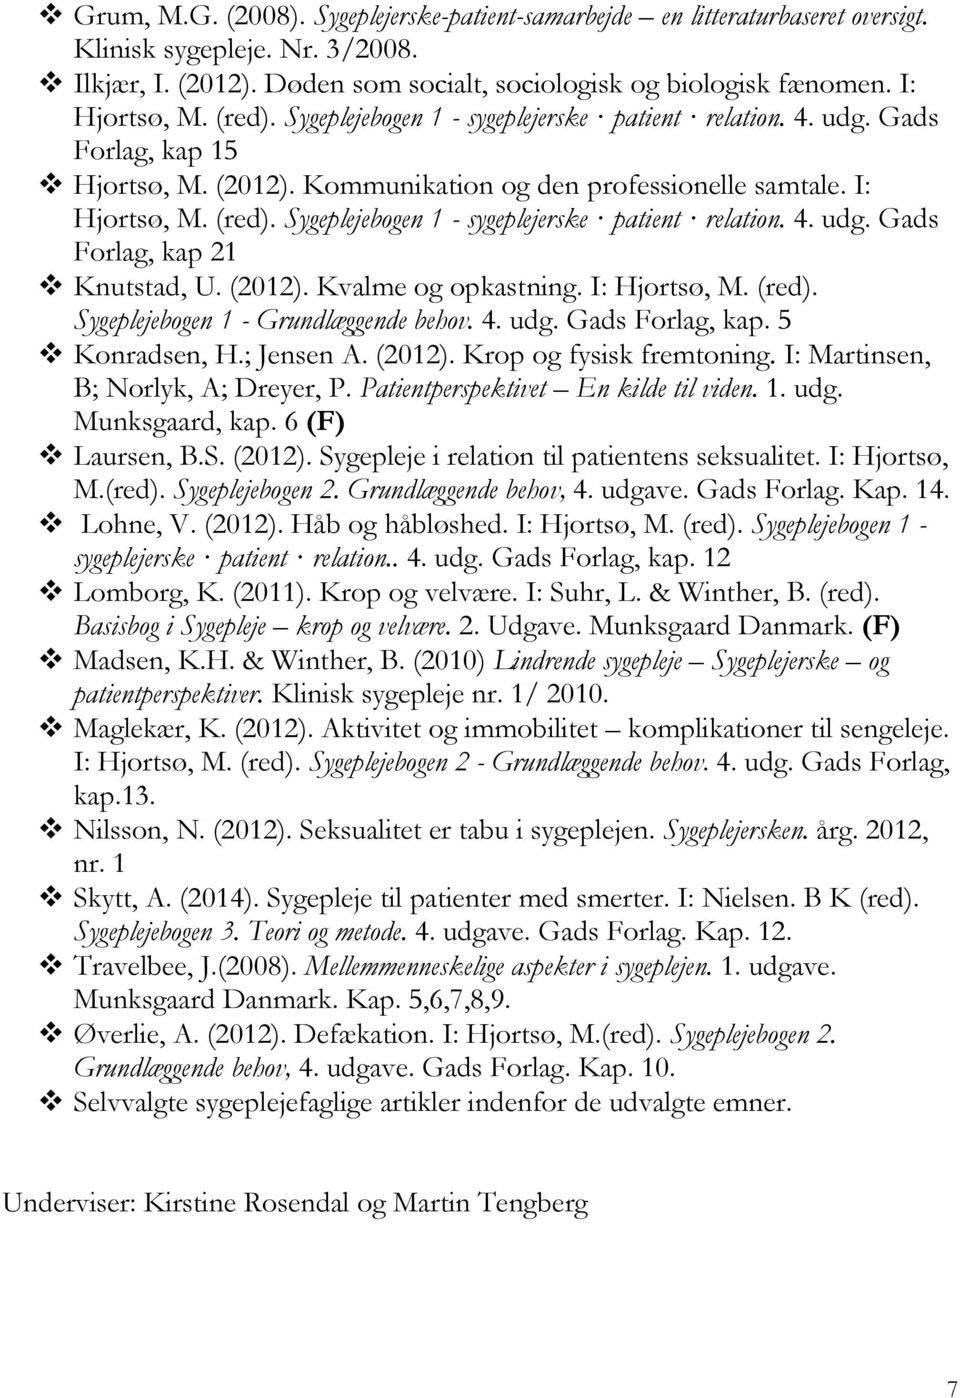 Sygeplejebogen 1 - sygeplejerske patient relation. 4. udg. Gads Forlag, kap 21 Knutstad, U. (2012). Kvalme og opkastning. I: Hjortsø, M. (red). Sygeplejebogen 1 - Grundlæggende behov. 4. udg. Gads Forlag, kap. 5 Konradsen, H.